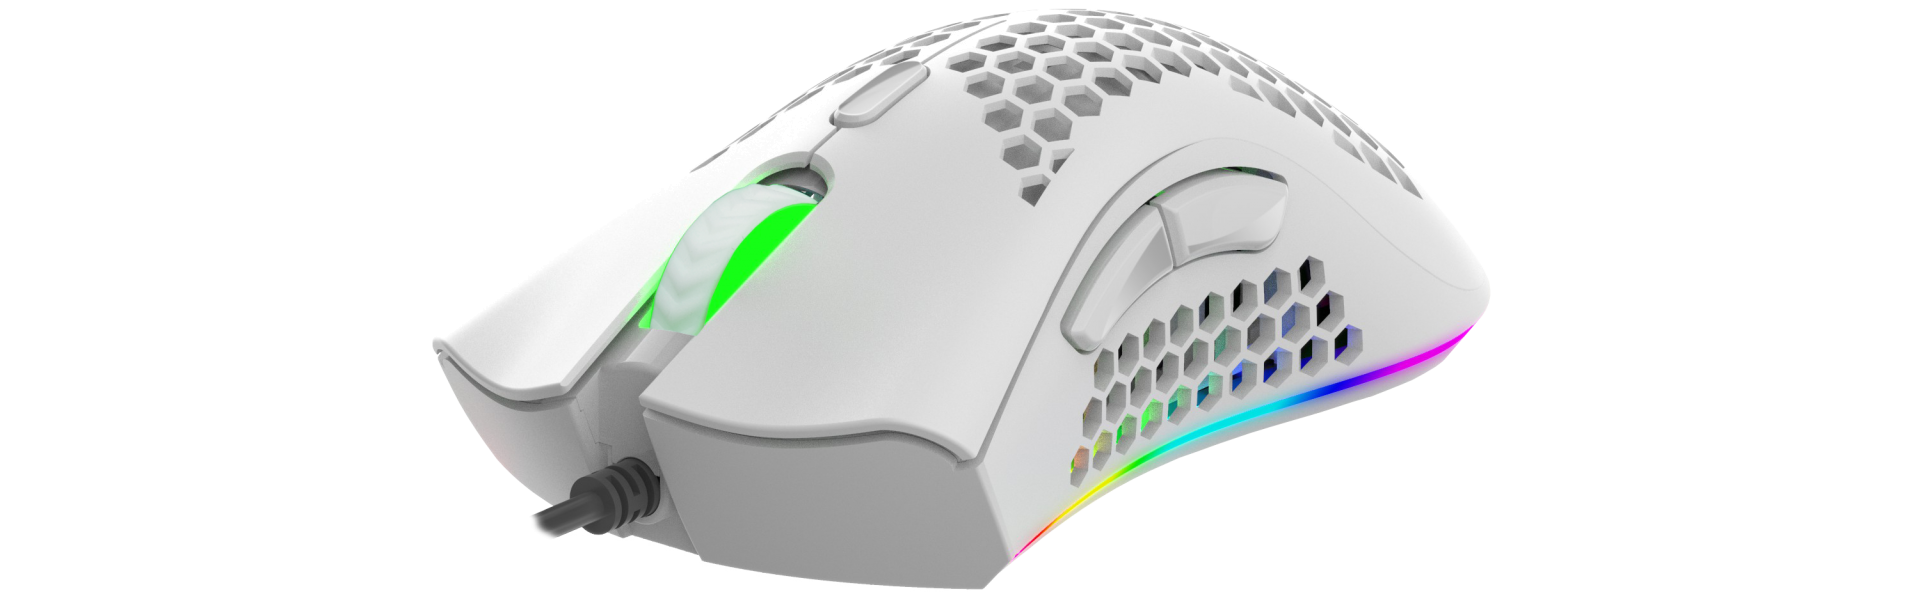 УЛЬТРАЛЕГКАЯ игровая программируемая мышь с LED-подсветкой RGB CHROMA LIGHT PANTEON MS771